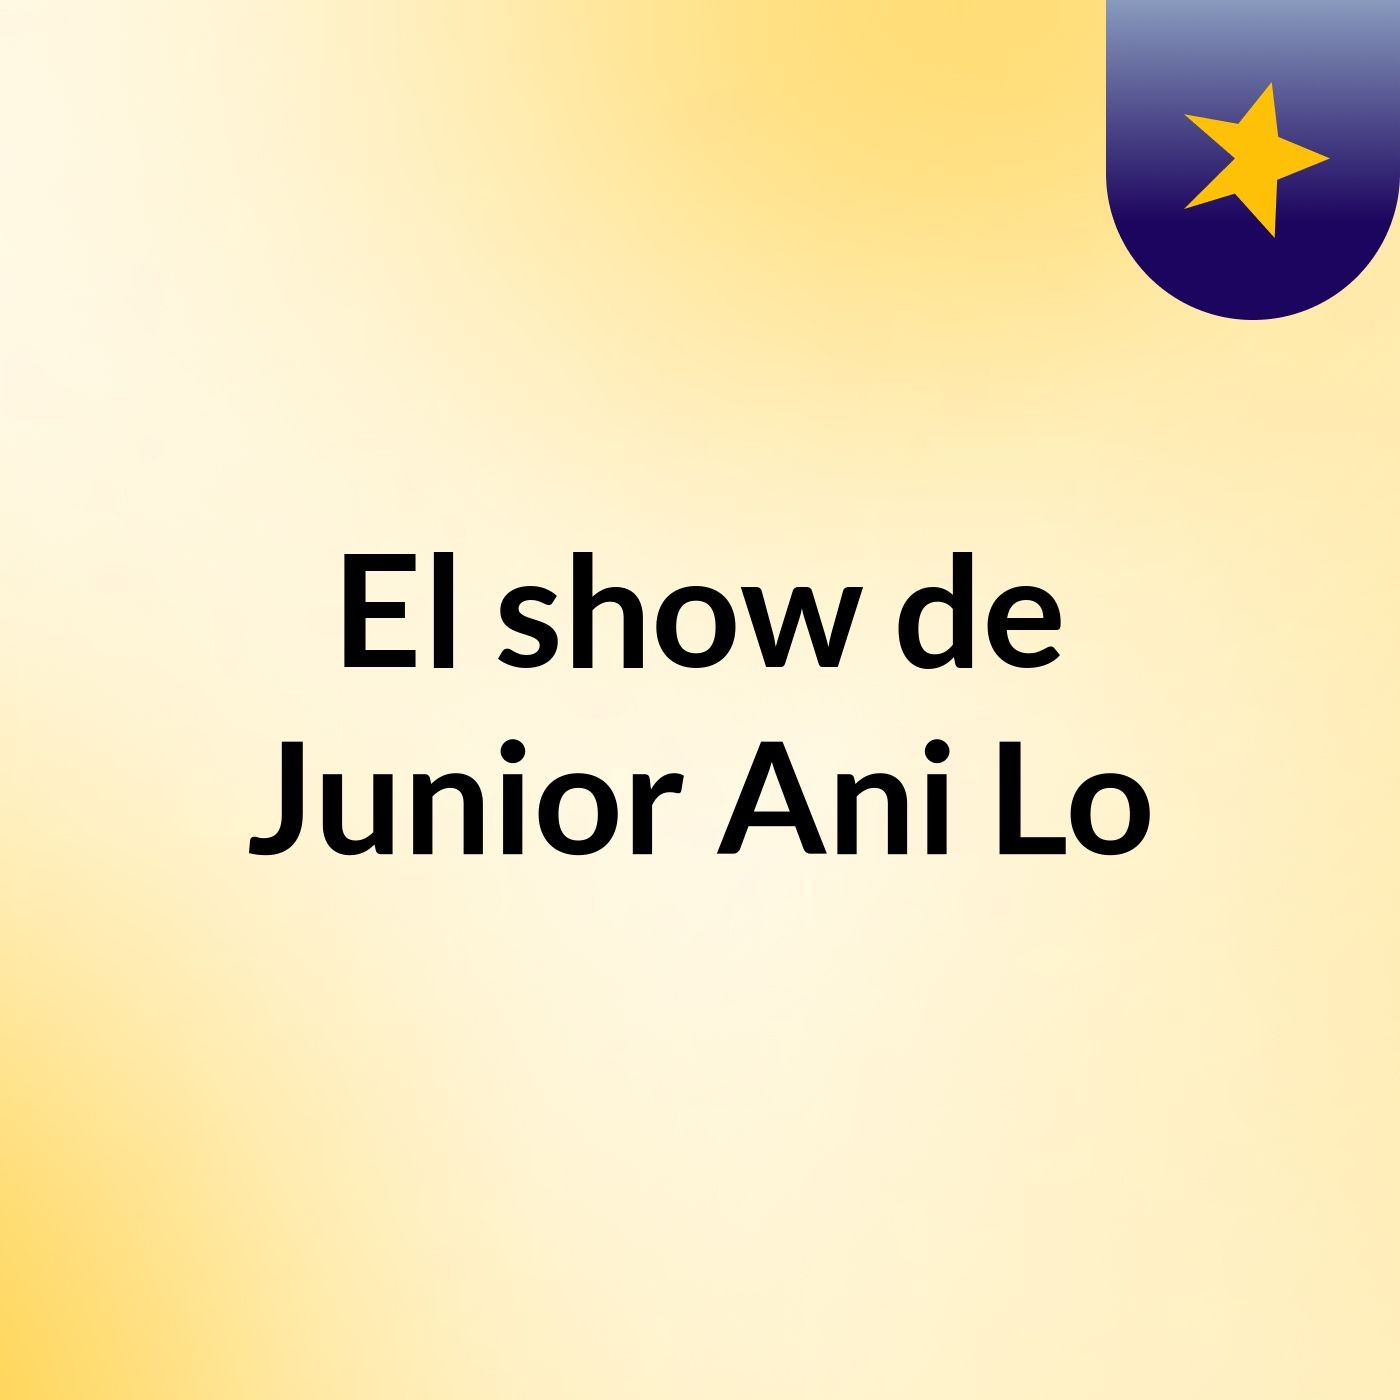 El show de Junior Ani Lo